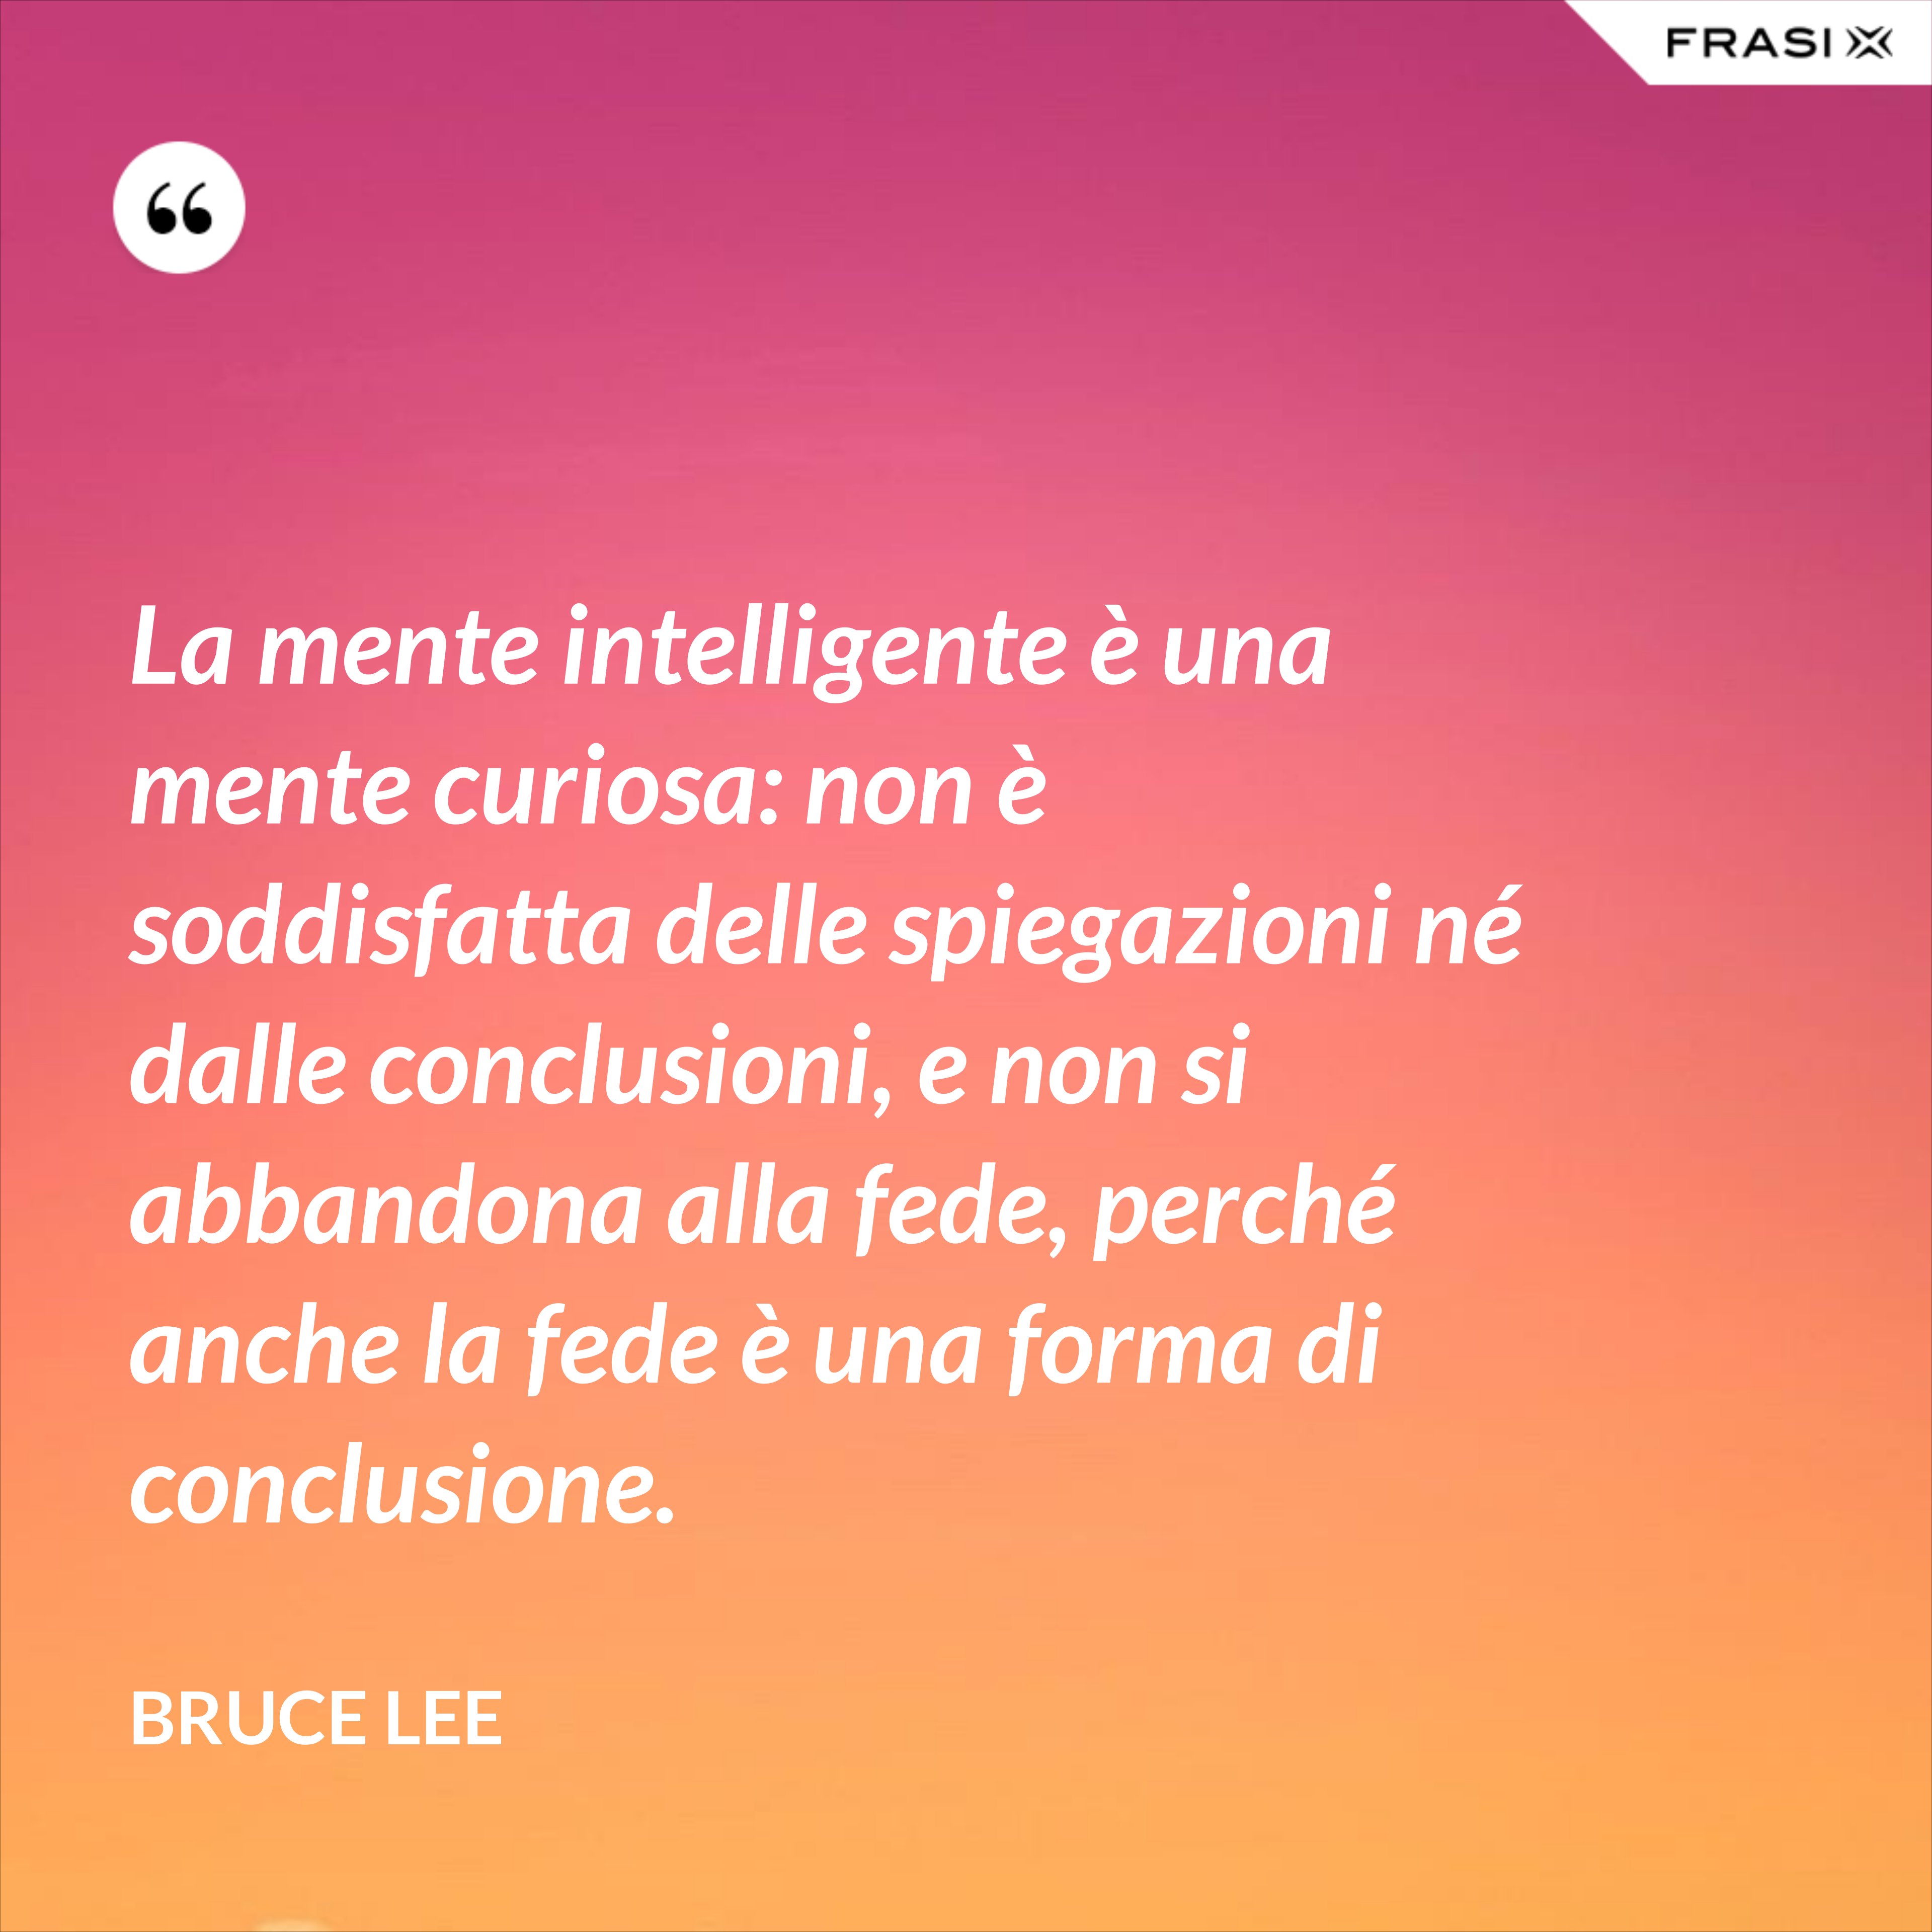 La mente intelligente è una mente curiosa: non è soddisfatta delle spiegazioni né dalle conclusioni, e non si abbandona alla fede, perché anche la fede è una forma di conclusione. - Bruce Lee